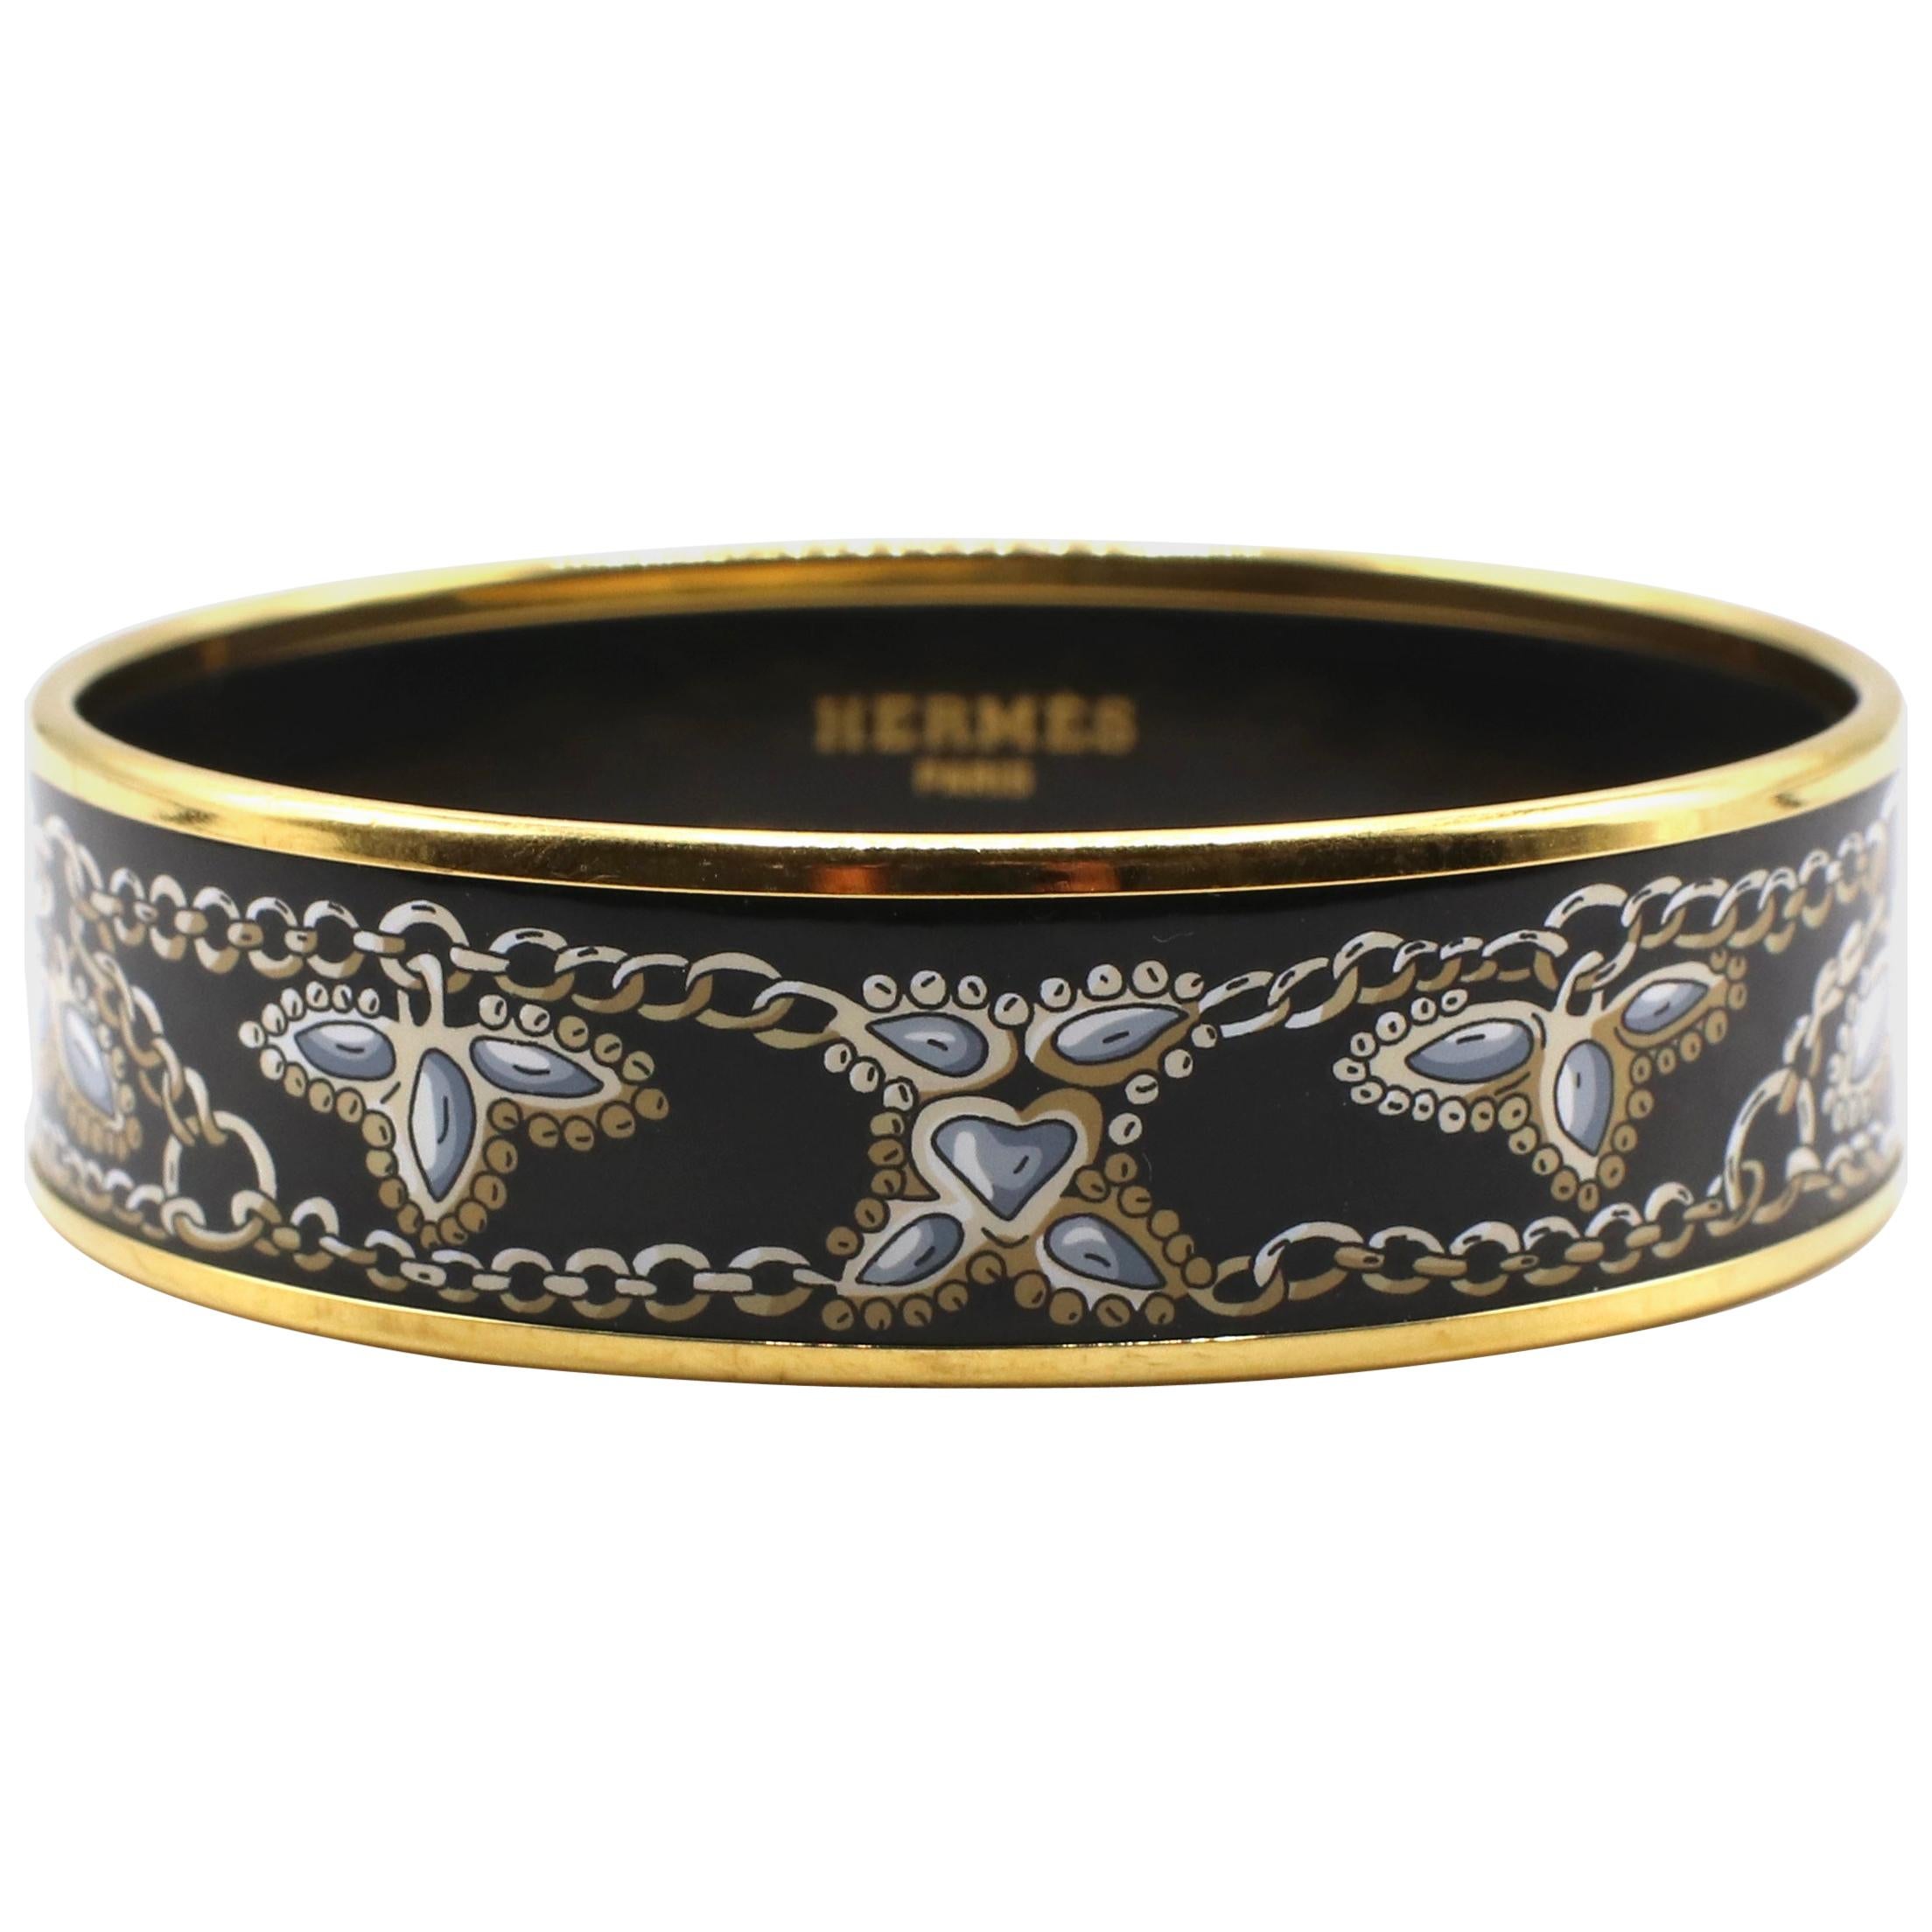 Hermes 18K Yellow Gold-Plated Enamel Bangle Bracelet Black & Gold Chain Design